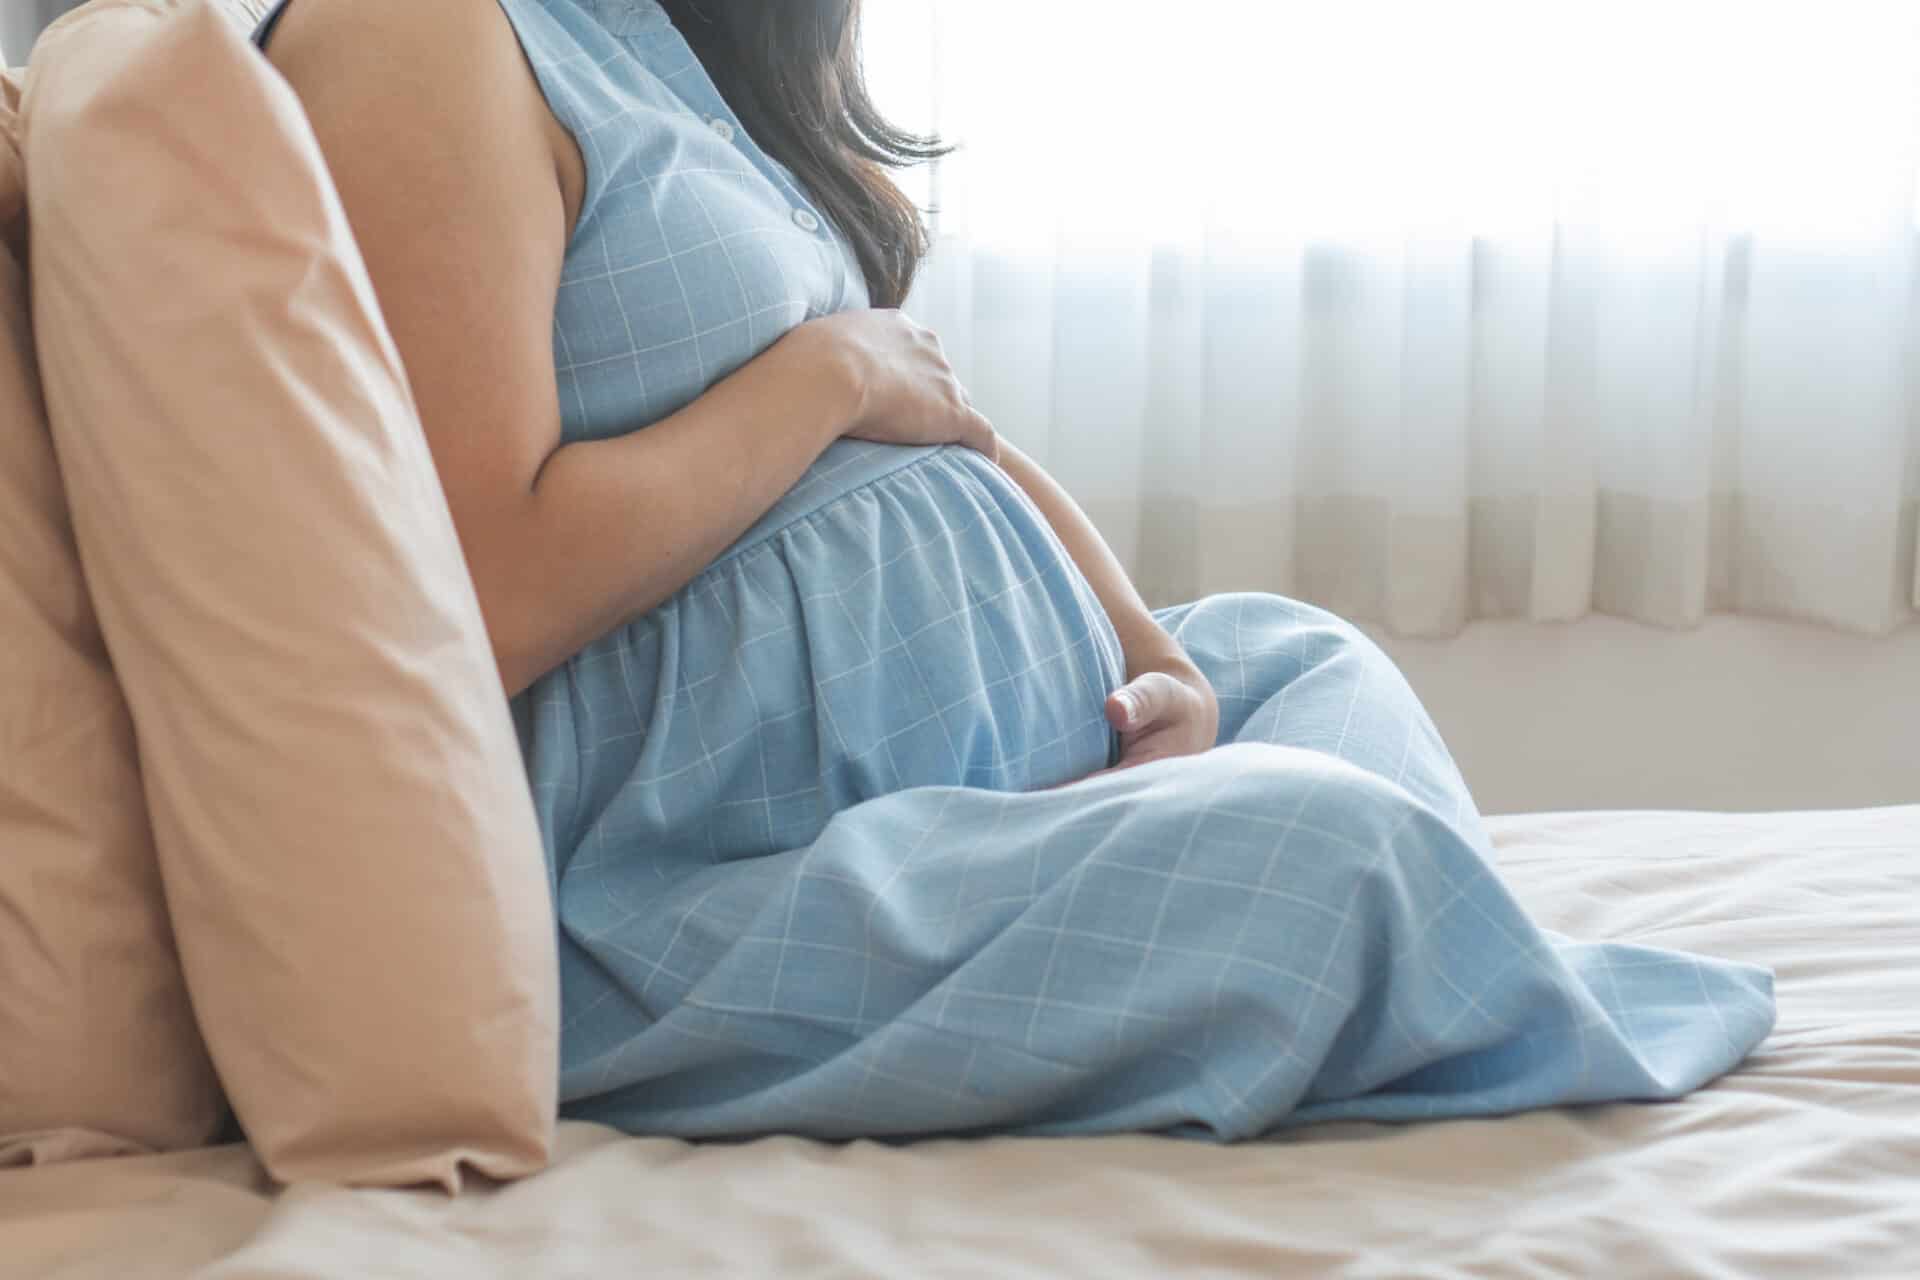 تأثير تليف الرحم والورم الليفي على الولادة والحمل 
هل تليف الرحم يمنع الحمل